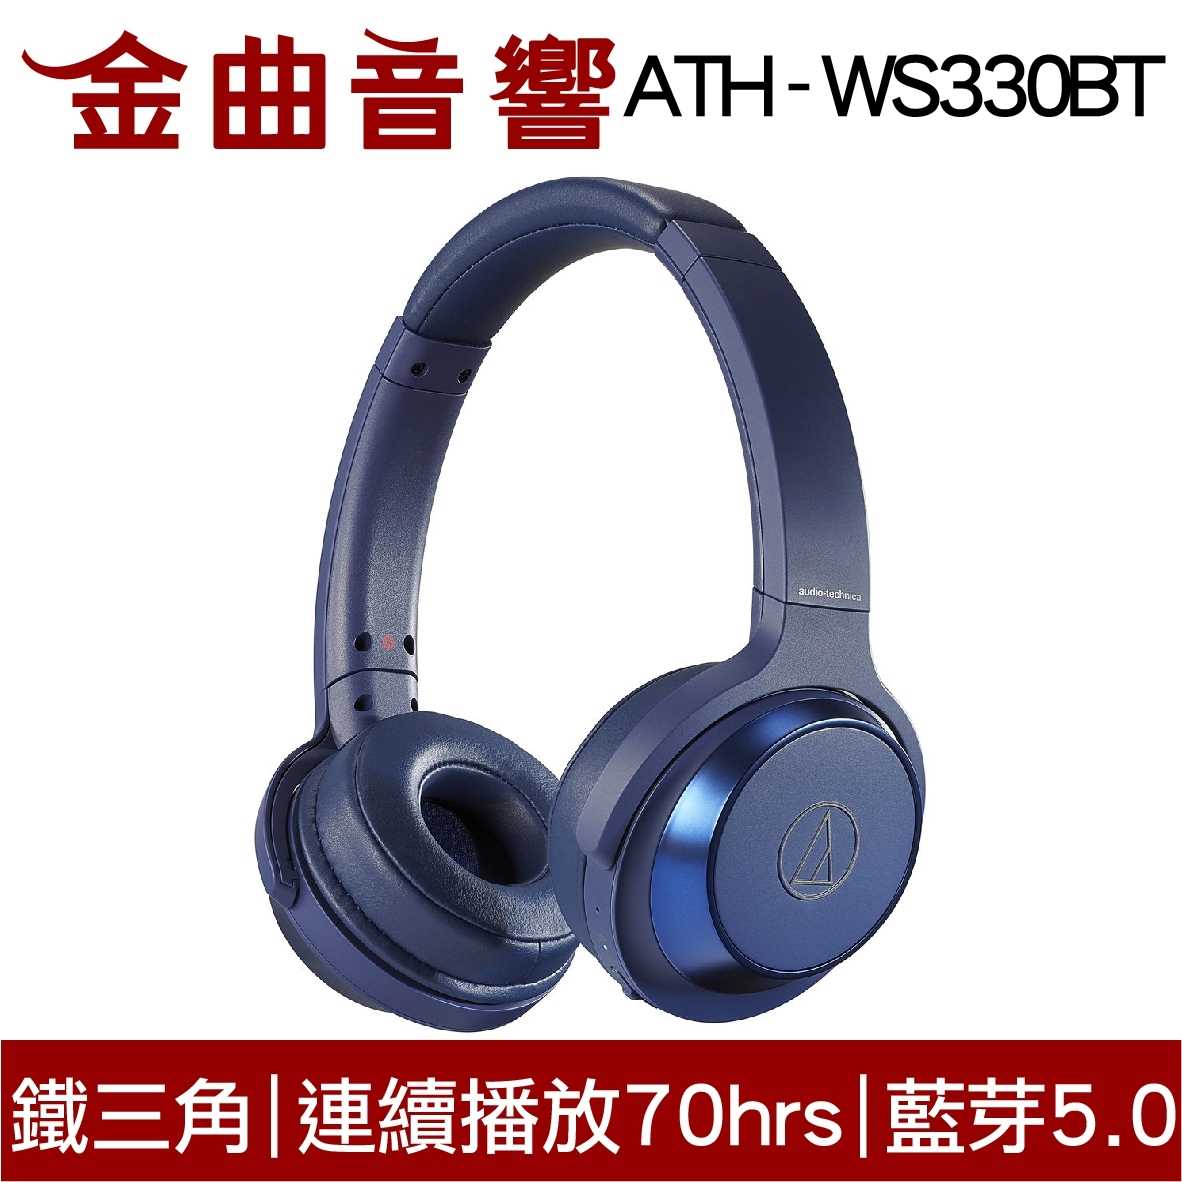 鐵三角 ATH-WS330BT 兒童耳機 大人 皆適用 無線藍牙耳機 重低音 | 金曲音響